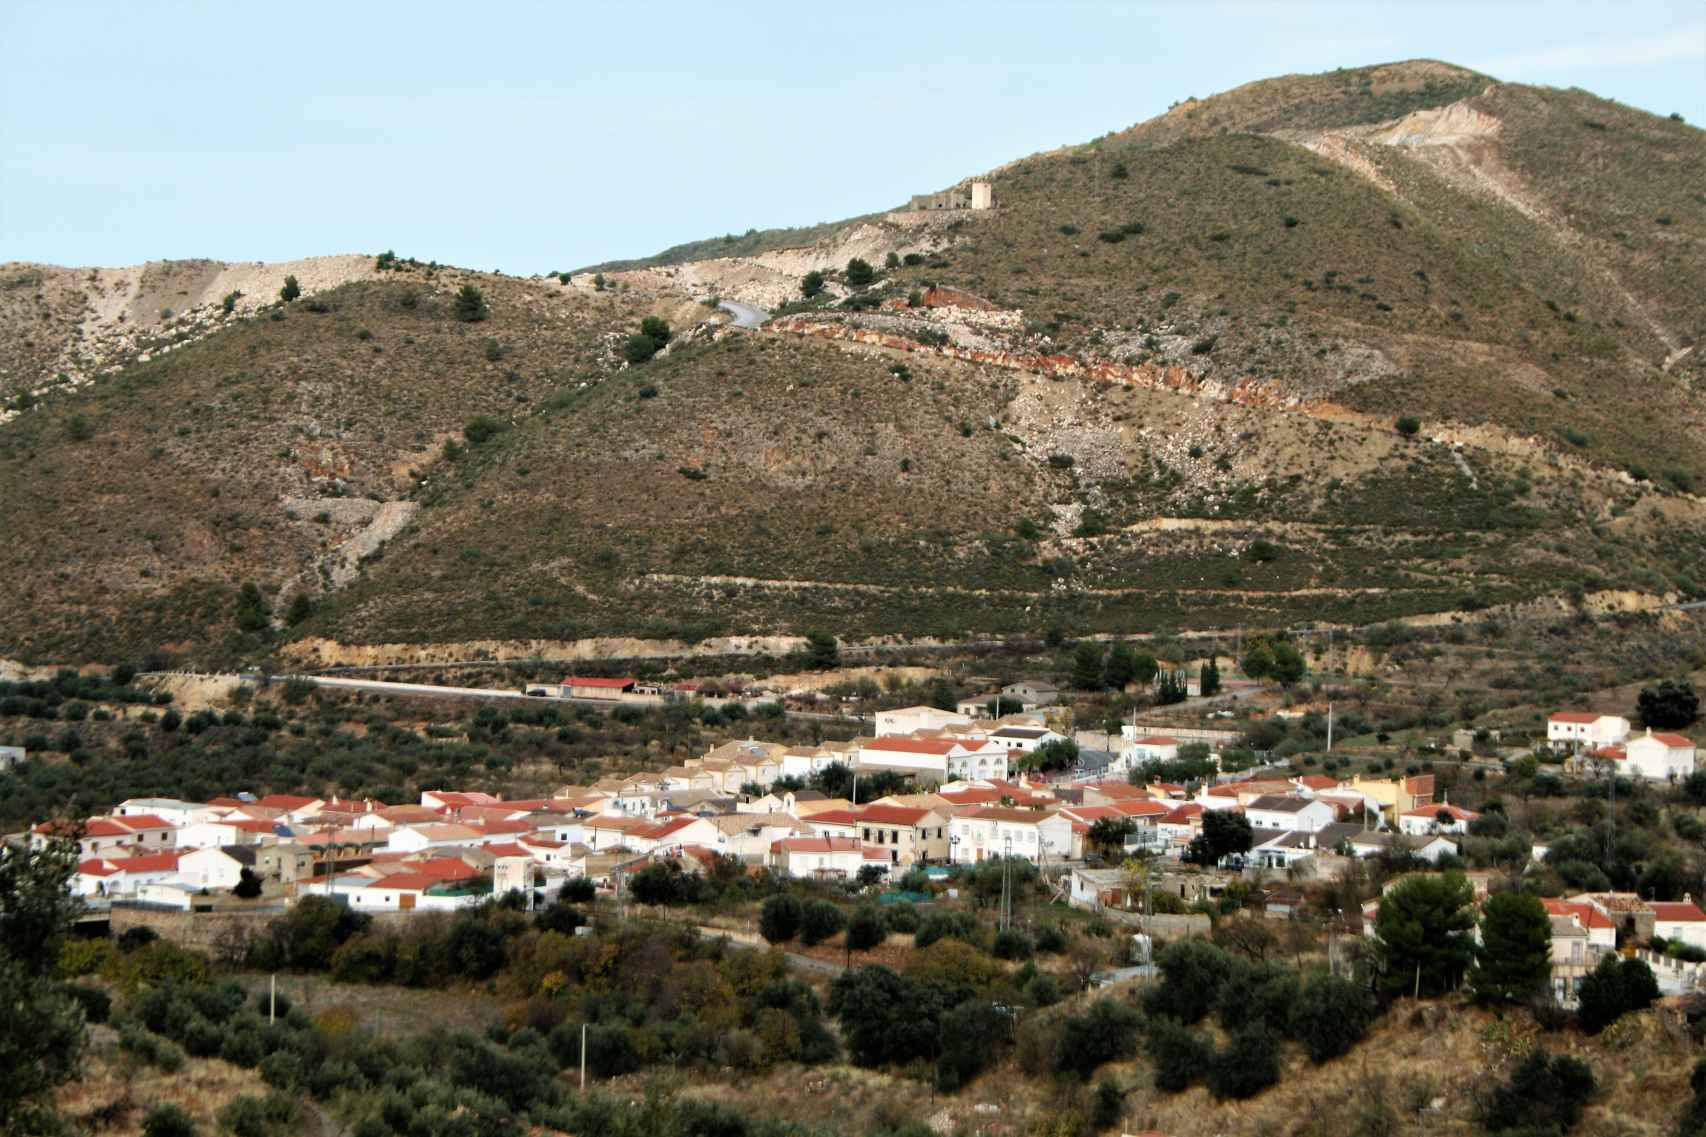 Vista del núcleo de población de Chercos Nuevo, en la sierra de Los Filabres de Almería.